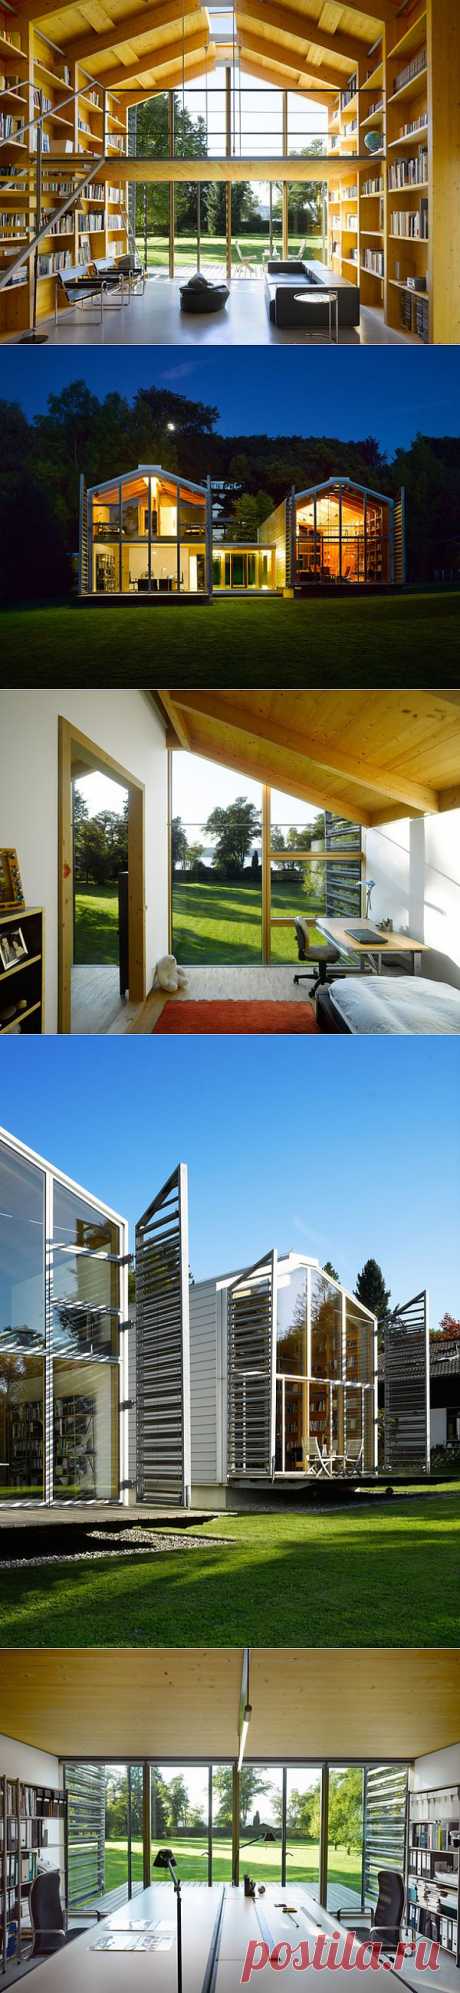 Функциональный дом в Швейцарии | Архитектура в журнале AD | Ведущий международный журнал об архитектуре и дизайне интерьеров